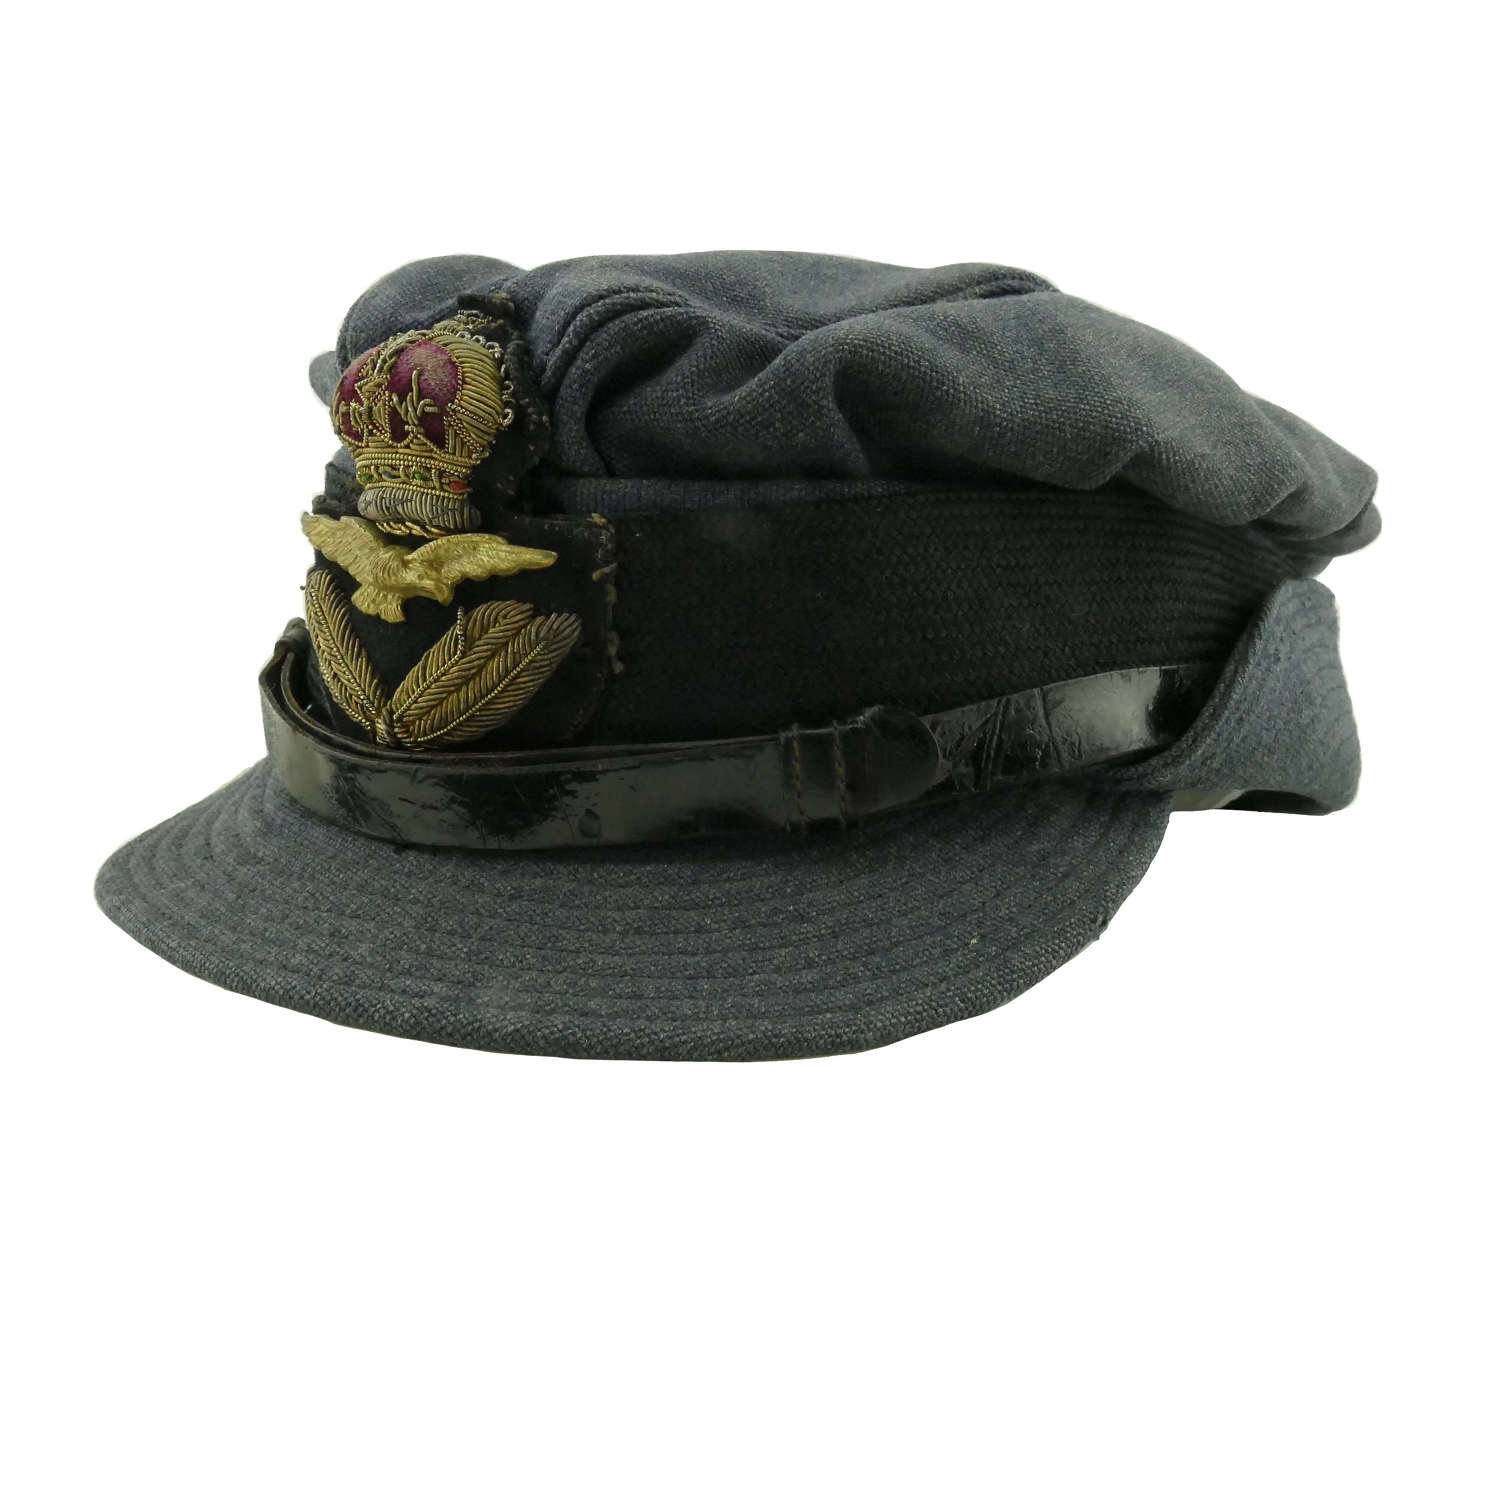 WAAF officer rank service dress cap